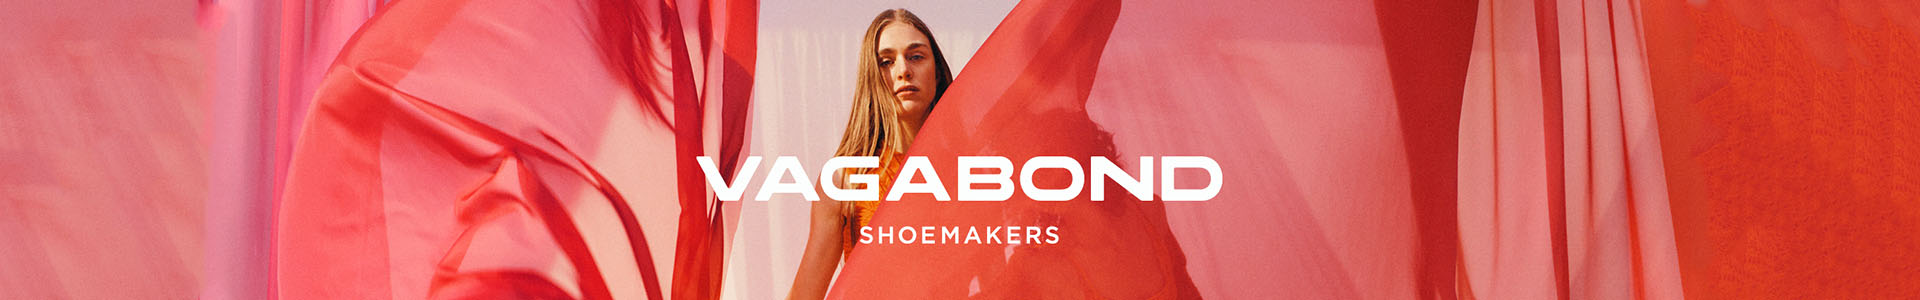 Vagabond Shoe Makers